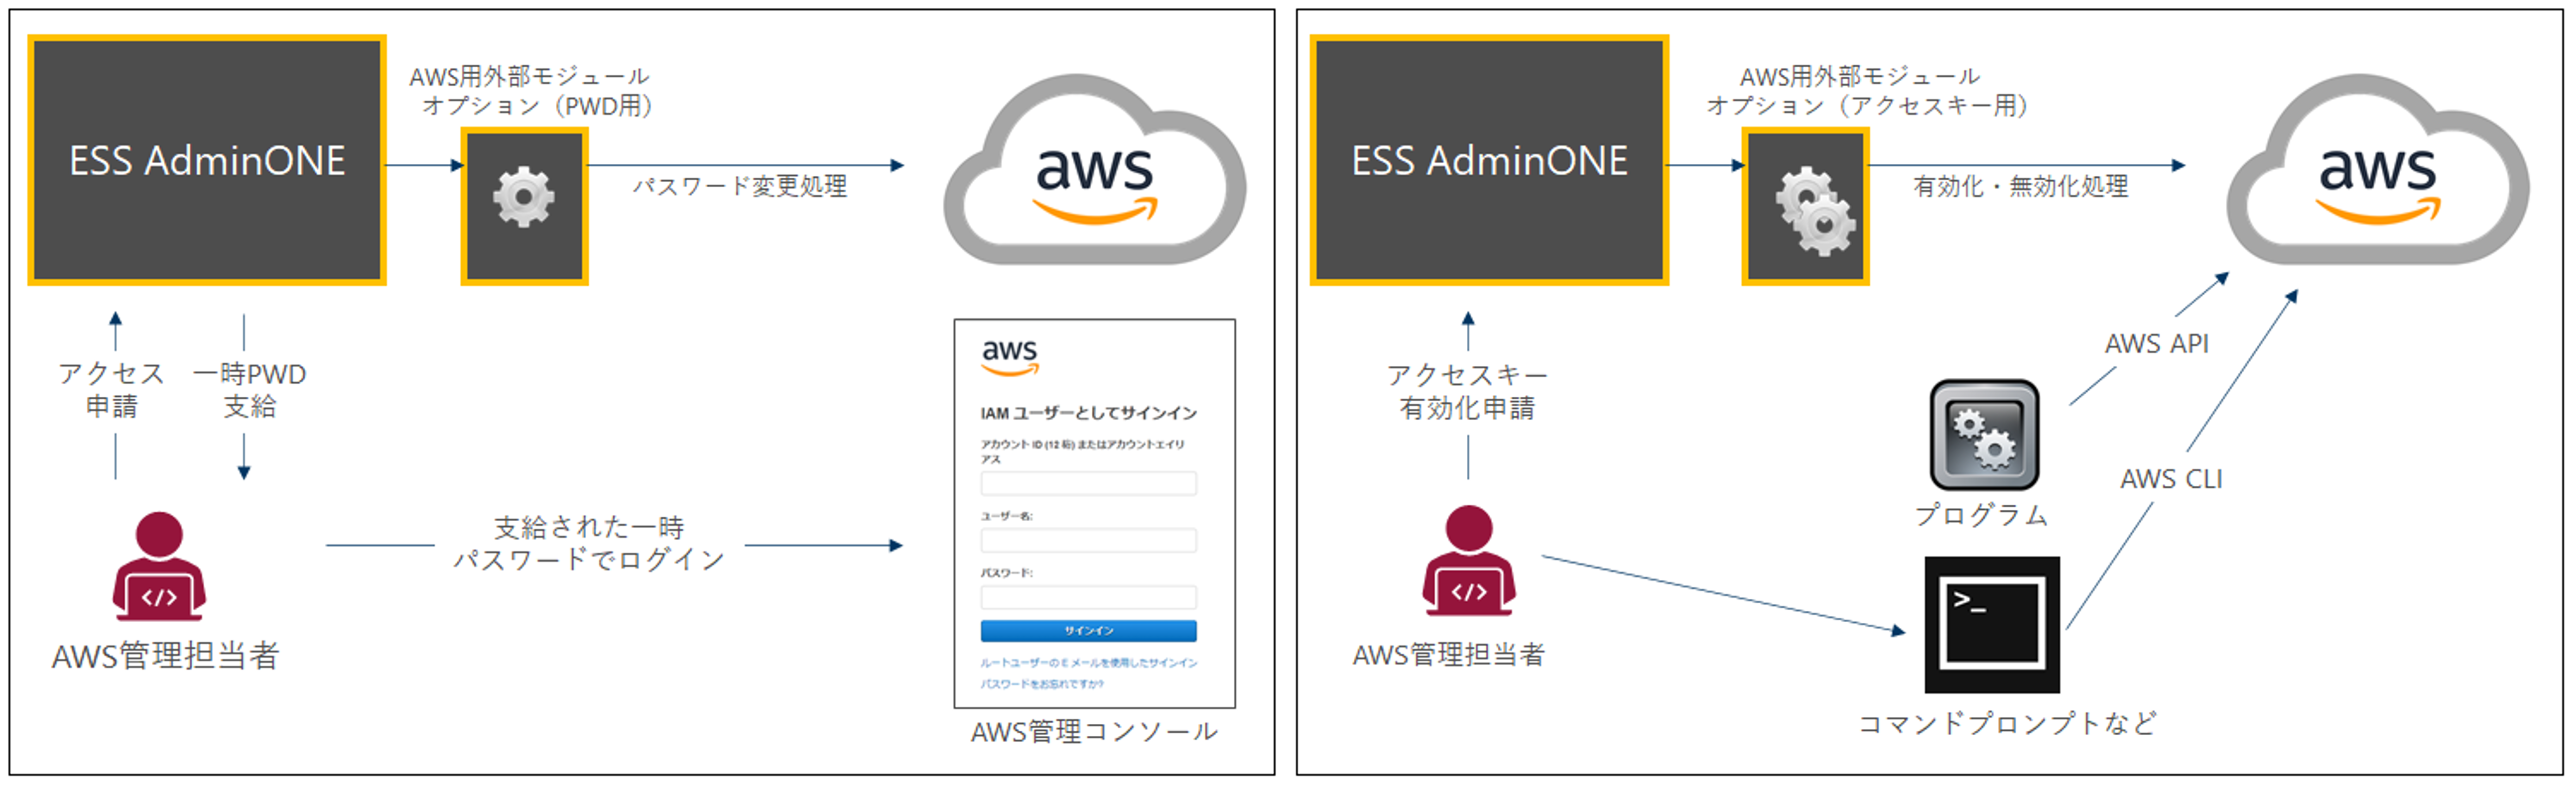 ESS AdminONEによるAWS IAMのパスワード管理とアクセスキー有効化のイメージ